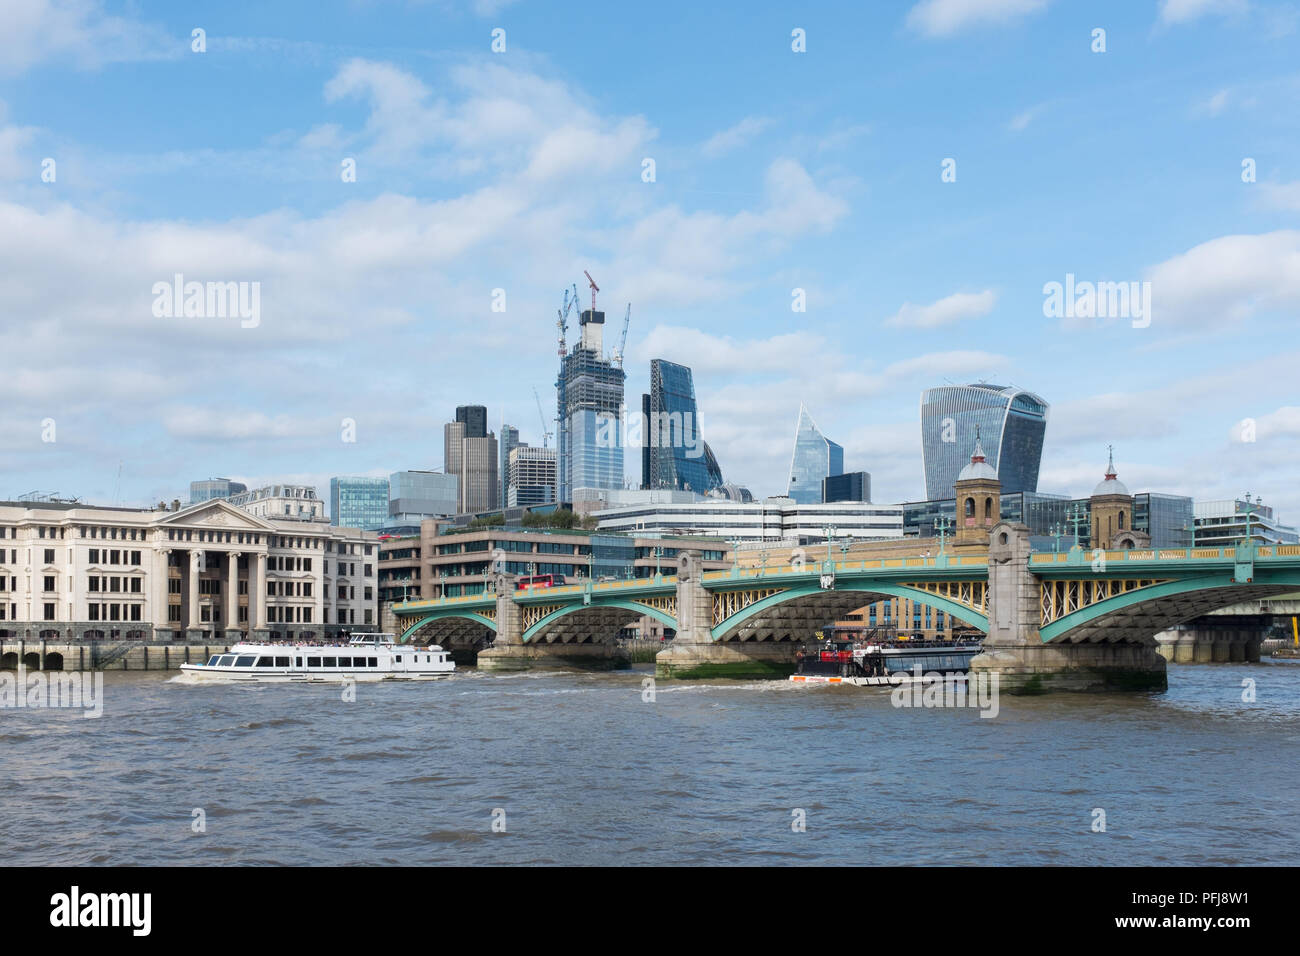 Southwark ponte che attraversa il fiume Tamigi a Londra con la City of London Financial District in background Foto Stock